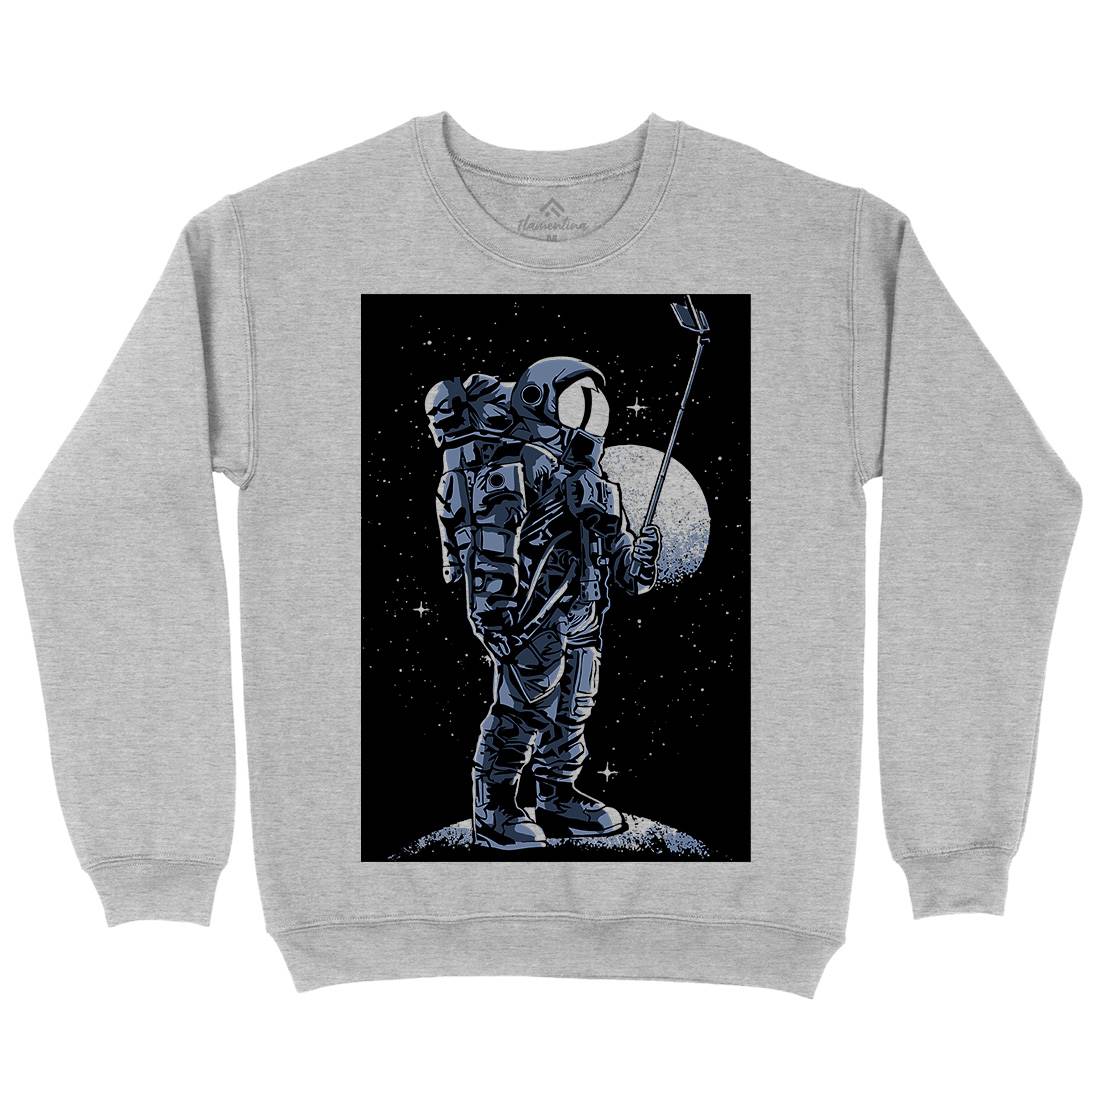 Selfie Astronaut Kids Crew Neck Sweatshirt Space A570